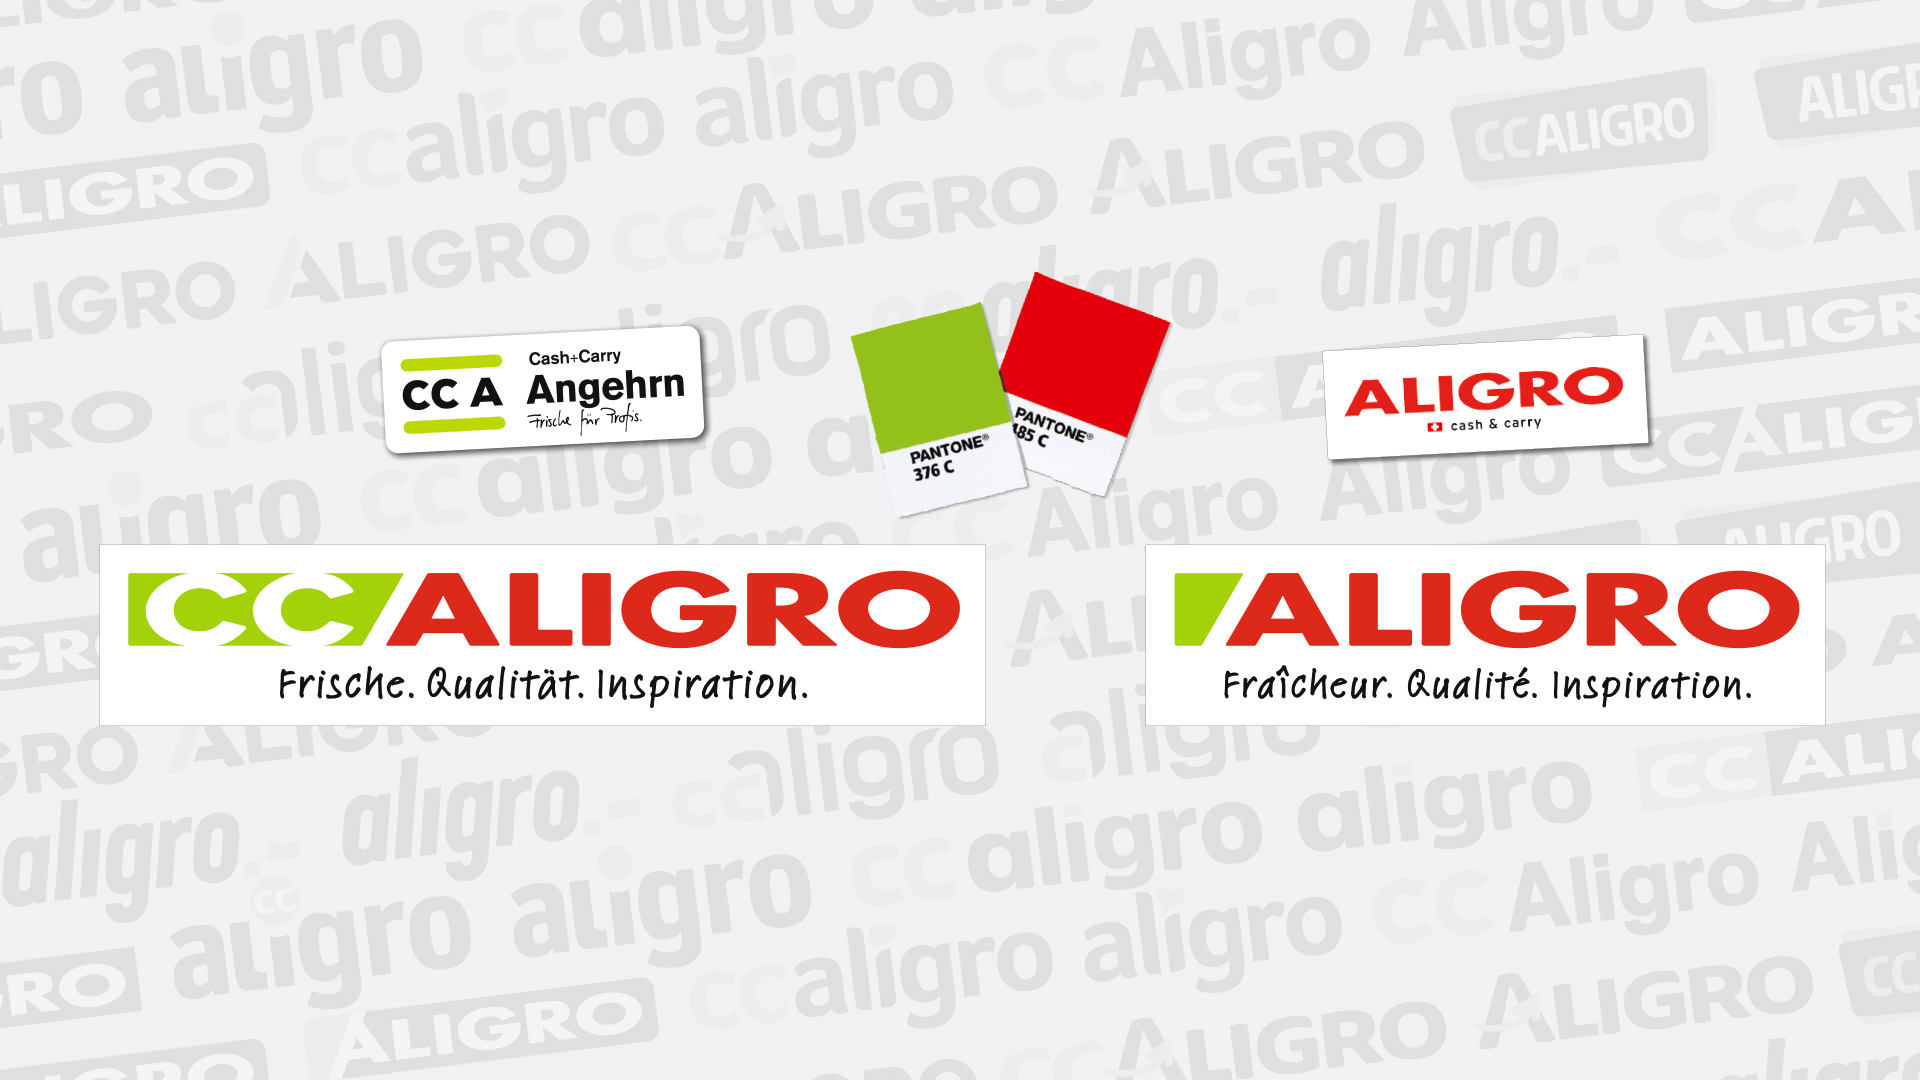 CC Aligro – Corporate Design